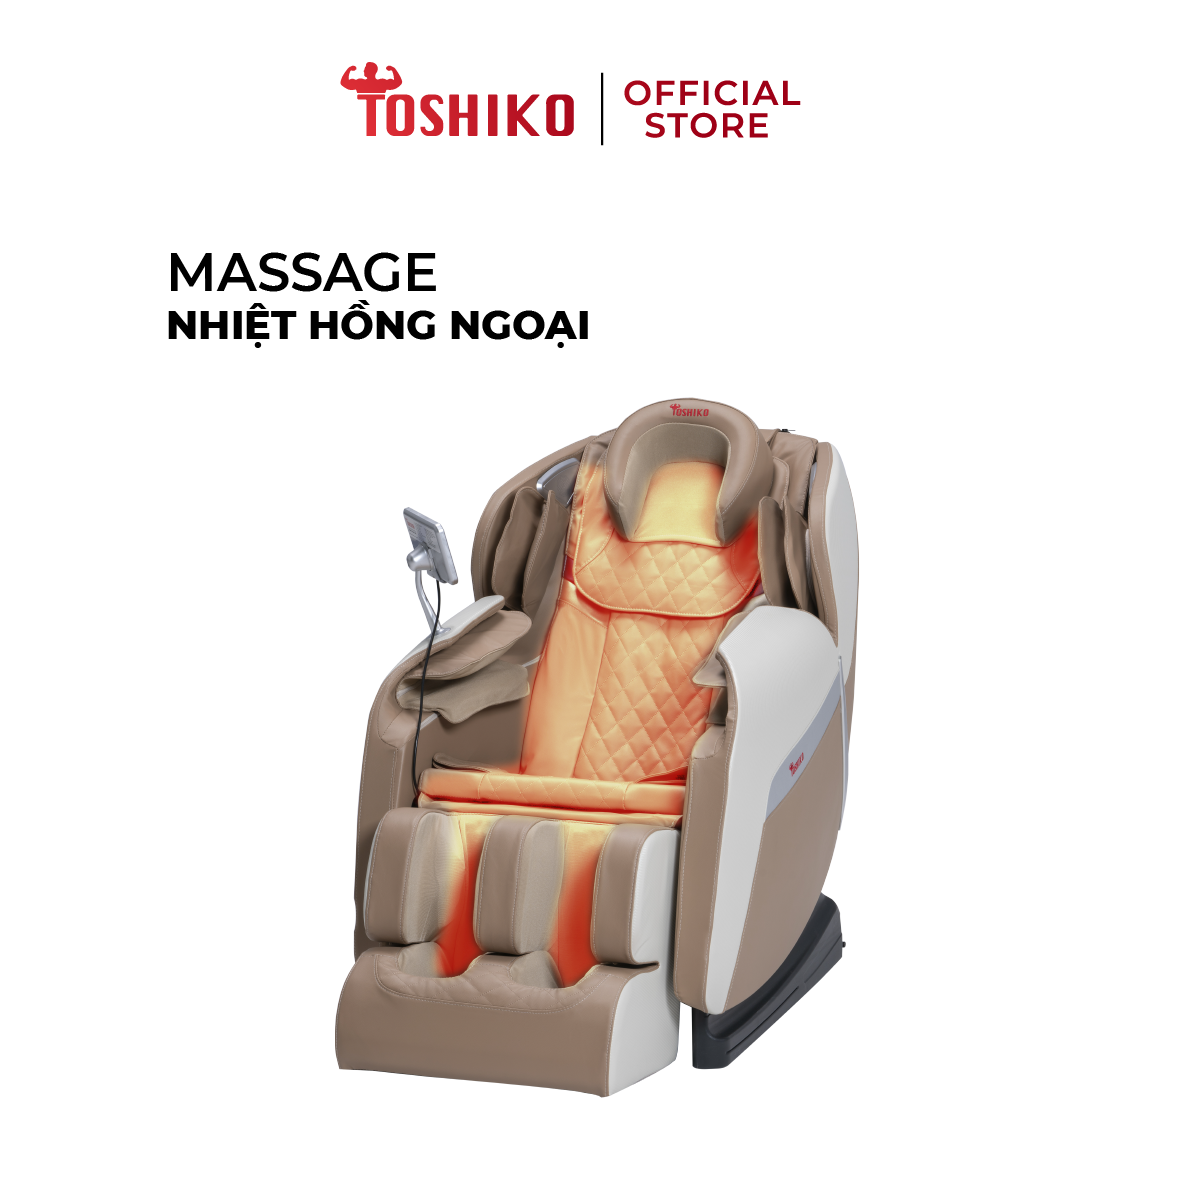 [Bảo hành 6 năm tại nhà] Ghế Massage Toàn Thân Đa Năng Toshiko T21 Pro điều khiển giọng nói, Công Nghệ Nhiệt Hồng Ngoại Tiên Tiến, Hỗ Trợ giảm tình trạng đau mỏi người, ghế massage toàn thân, ghế massage giá rẻ